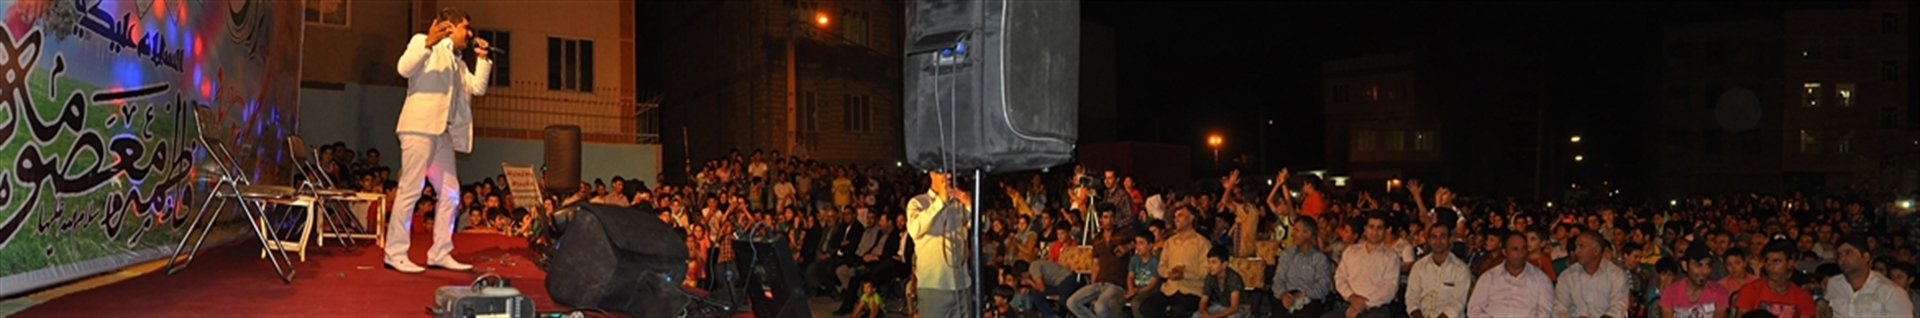 سیروس حسینی فر  - تقلیدصدا و اجرای طنز